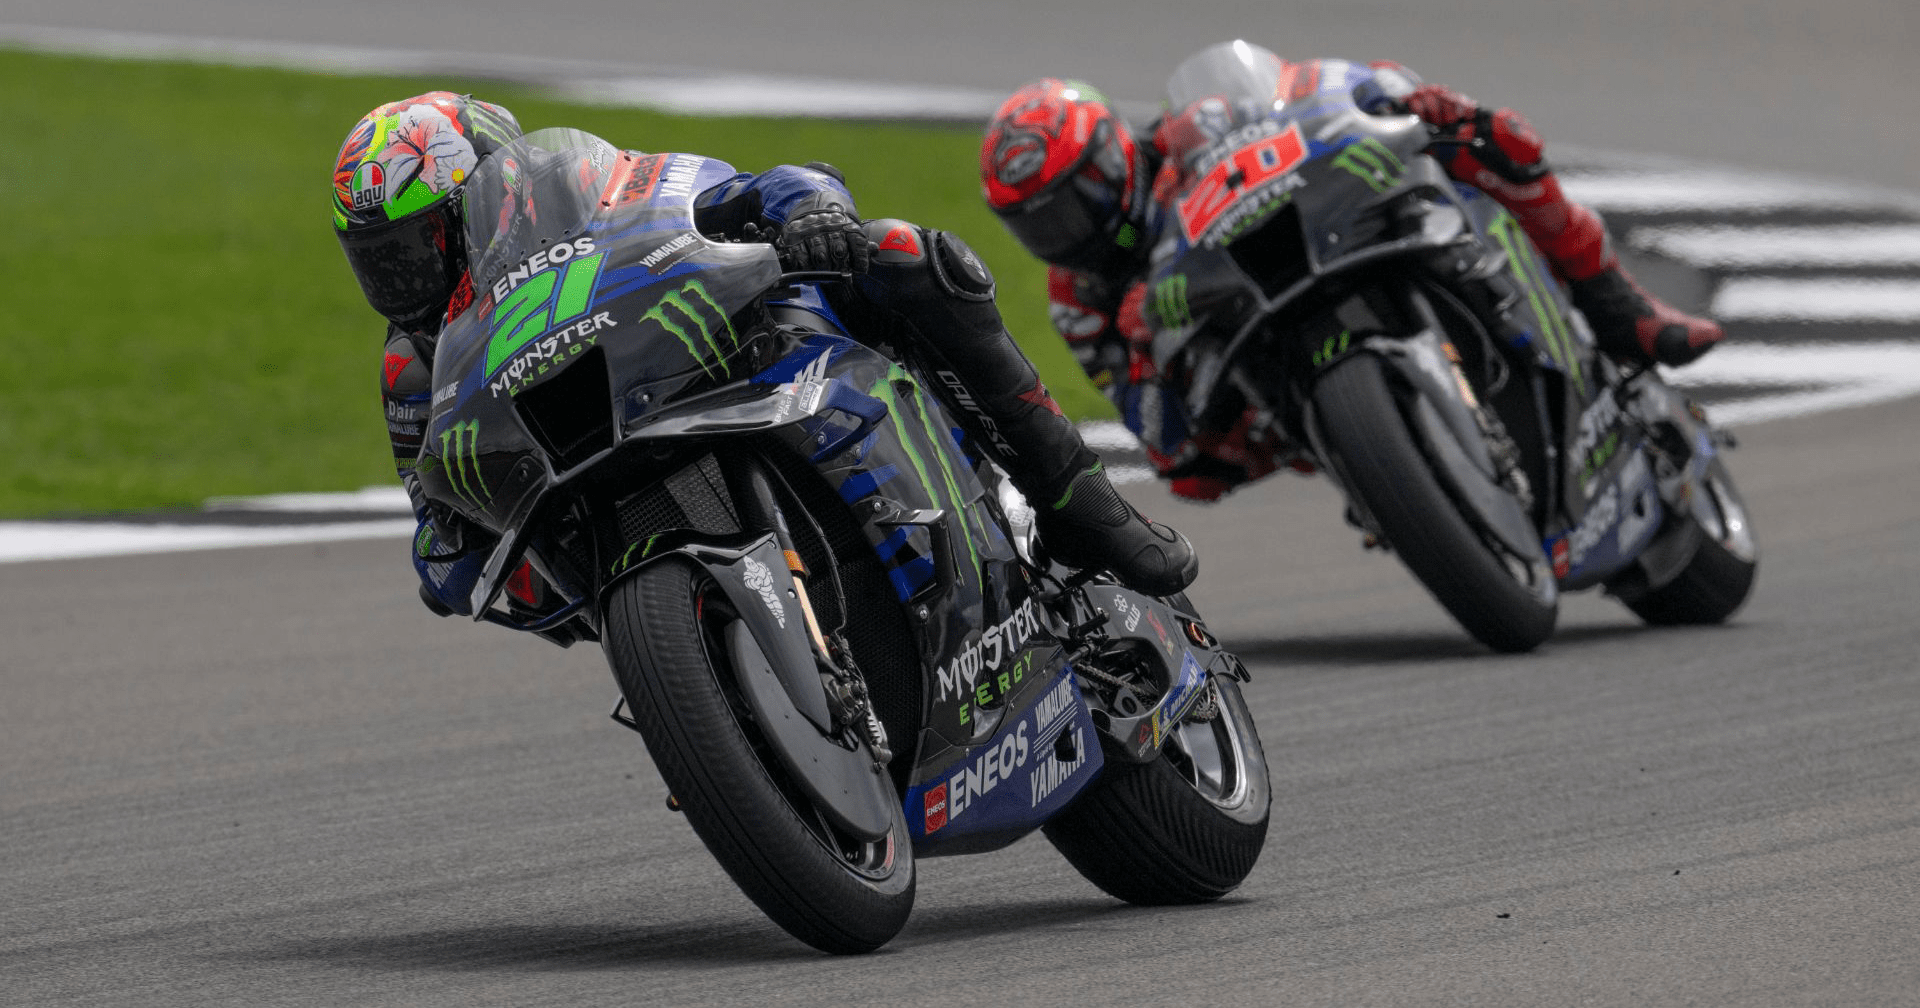 Cặp đôi của Monster Energy Yamaha MotoGP không gặp may trong cuộc đua chính ở GP Anh